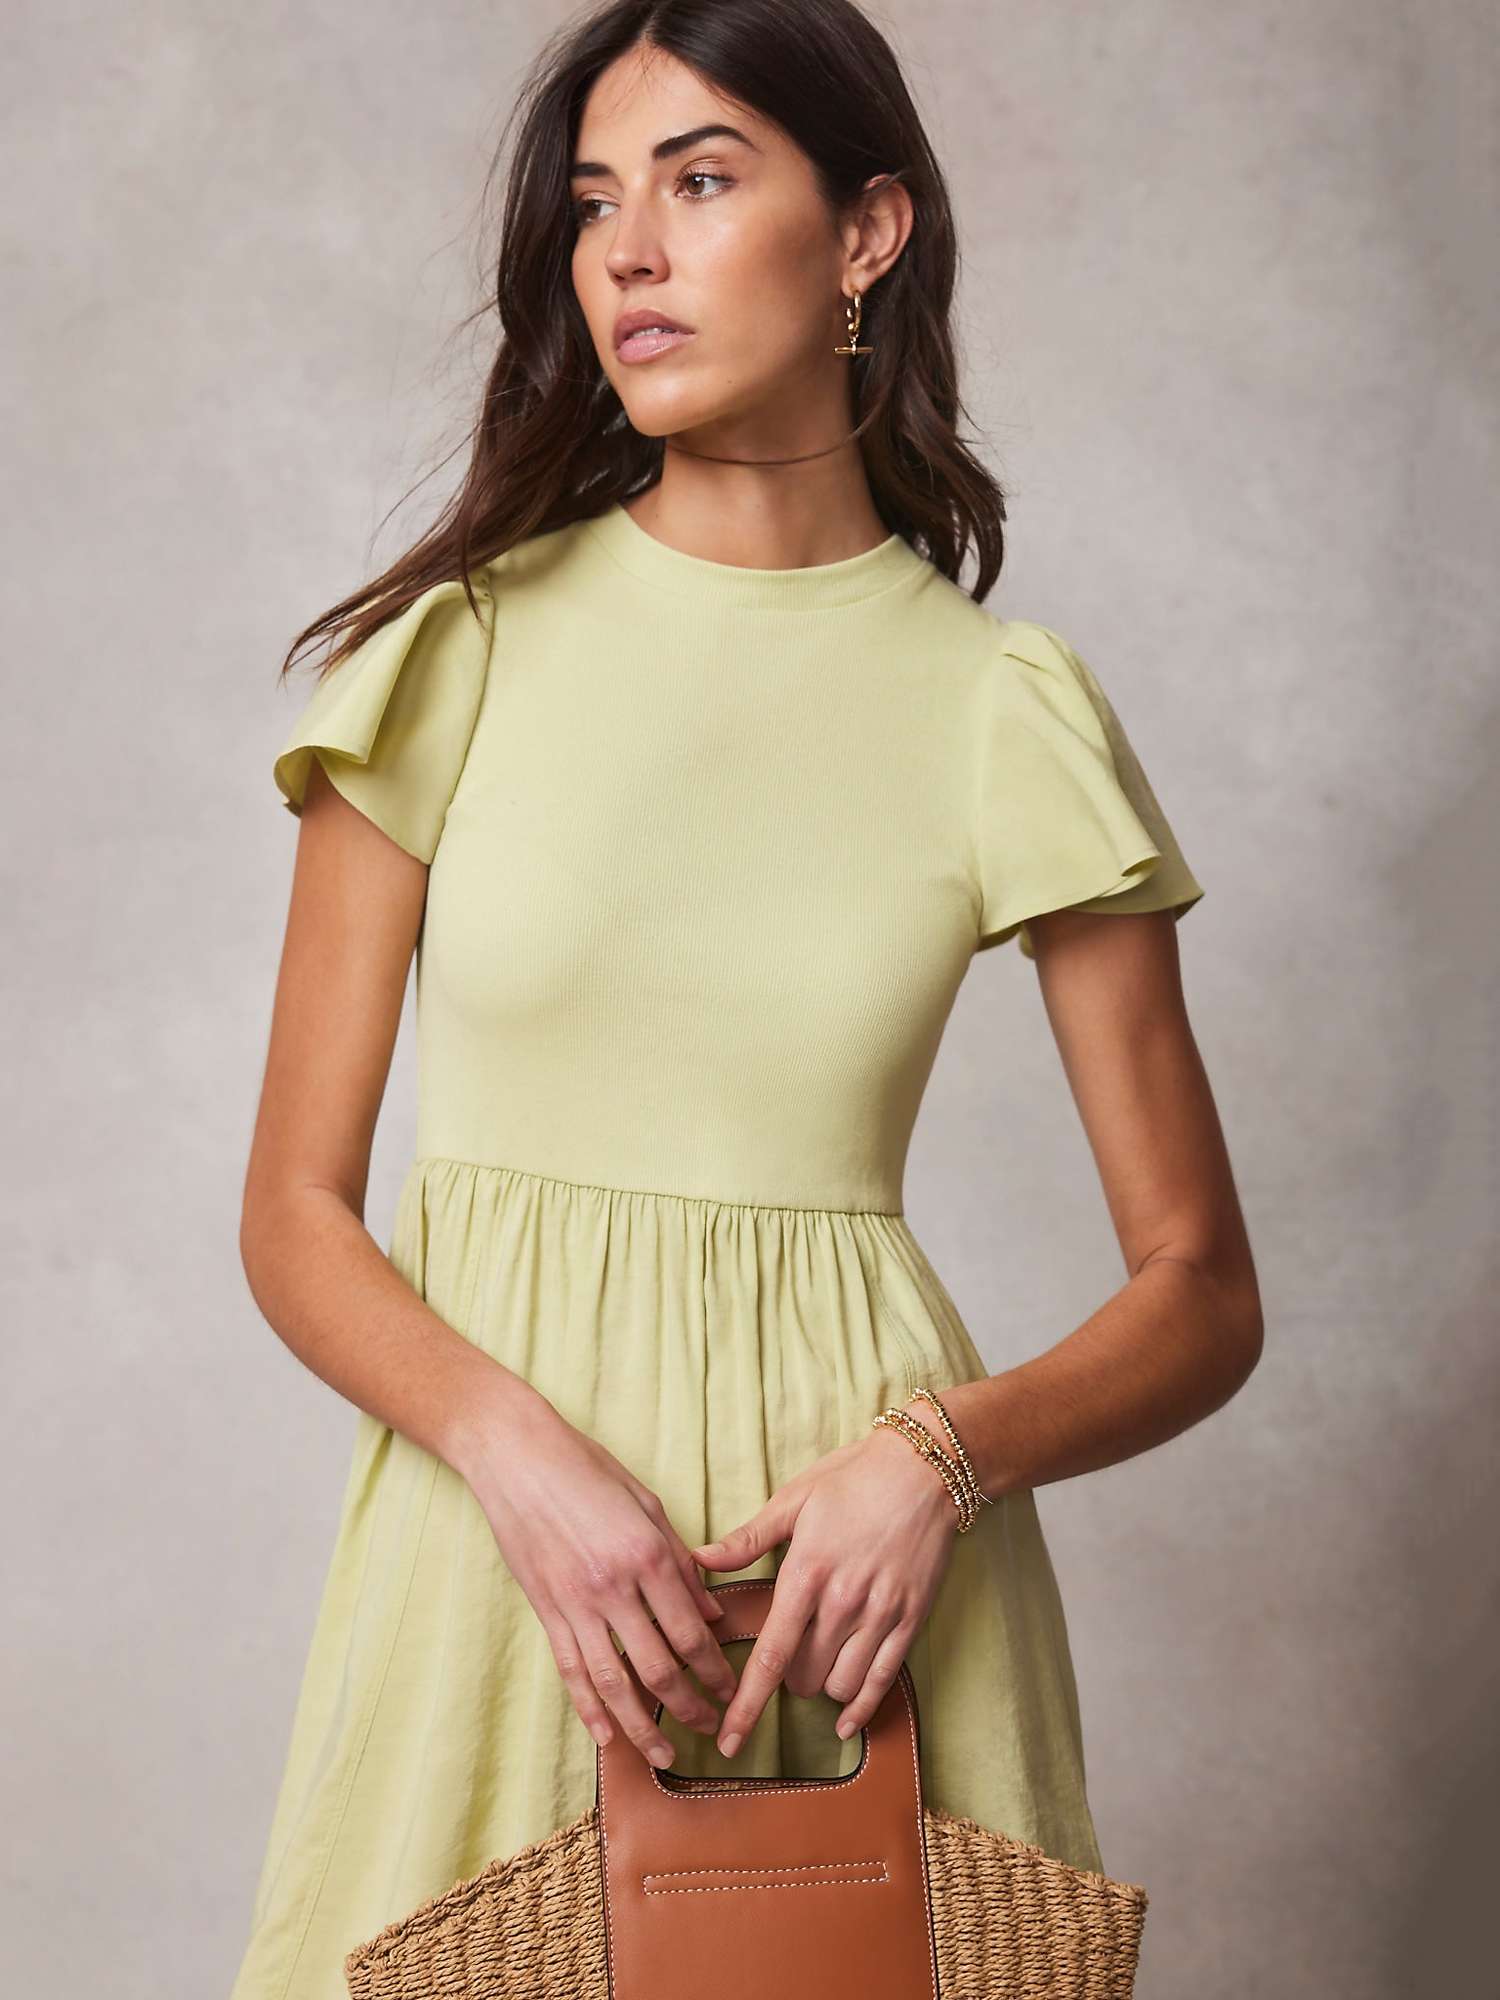 Buy Mint Velvet Ruffle Midi Jersey Dress, Green Online at johnlewis.com